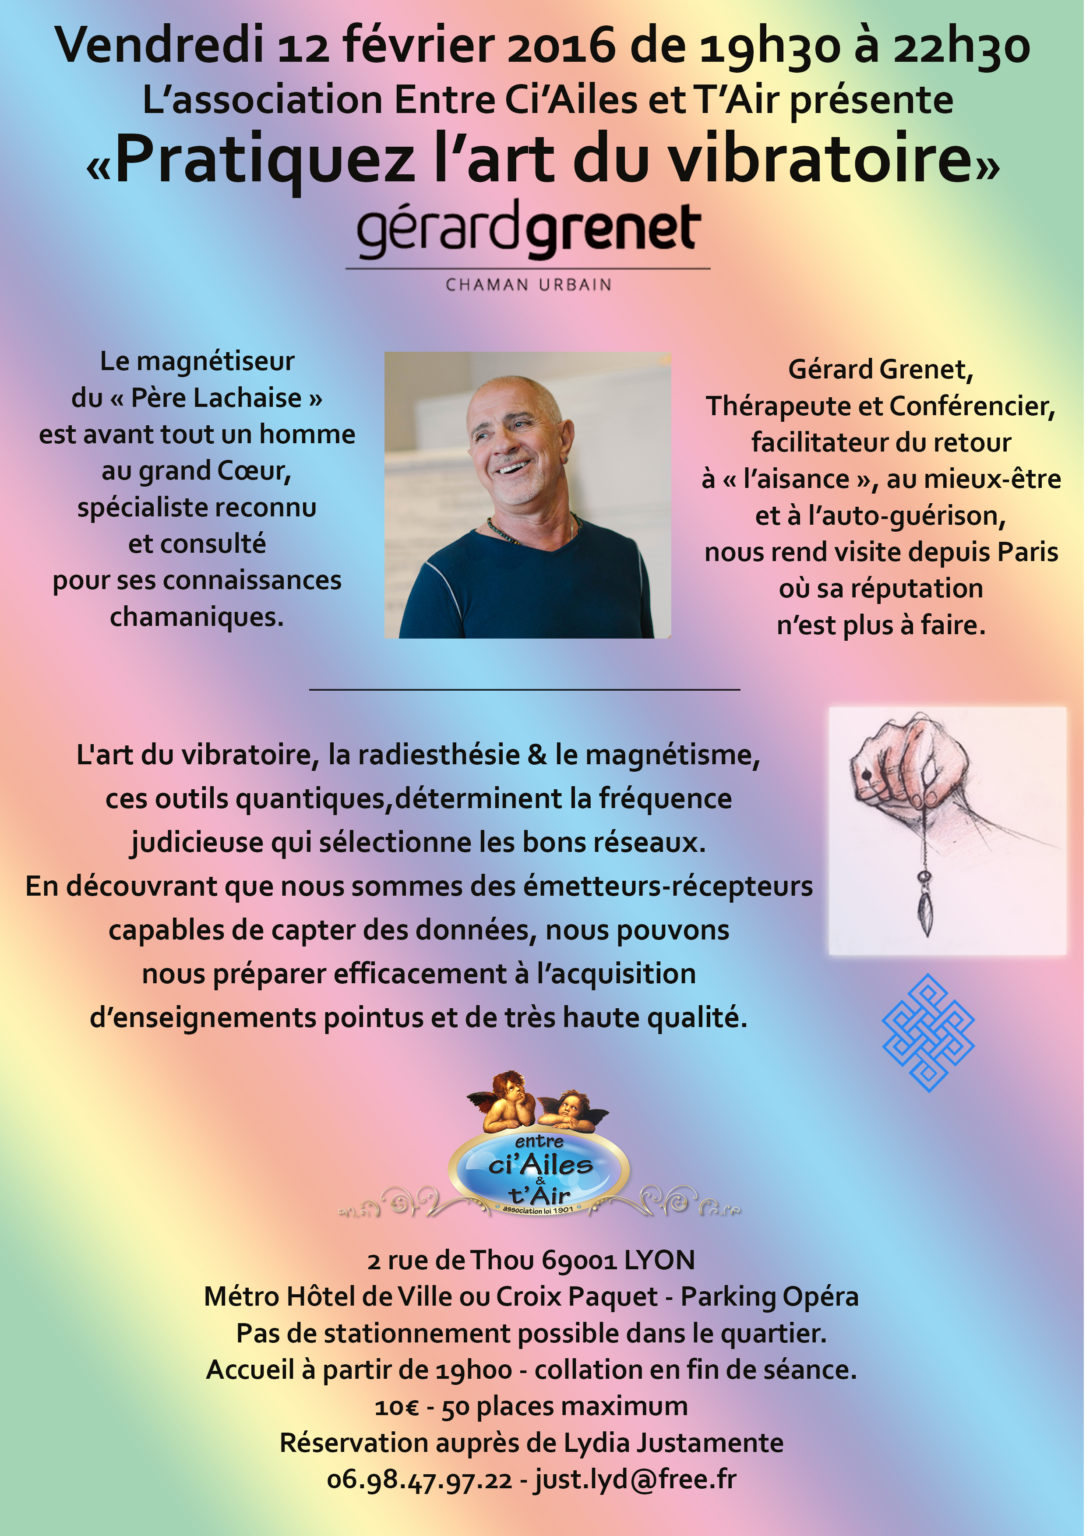 Pratiquez l'art du vibratoire avec Gérard Grenet